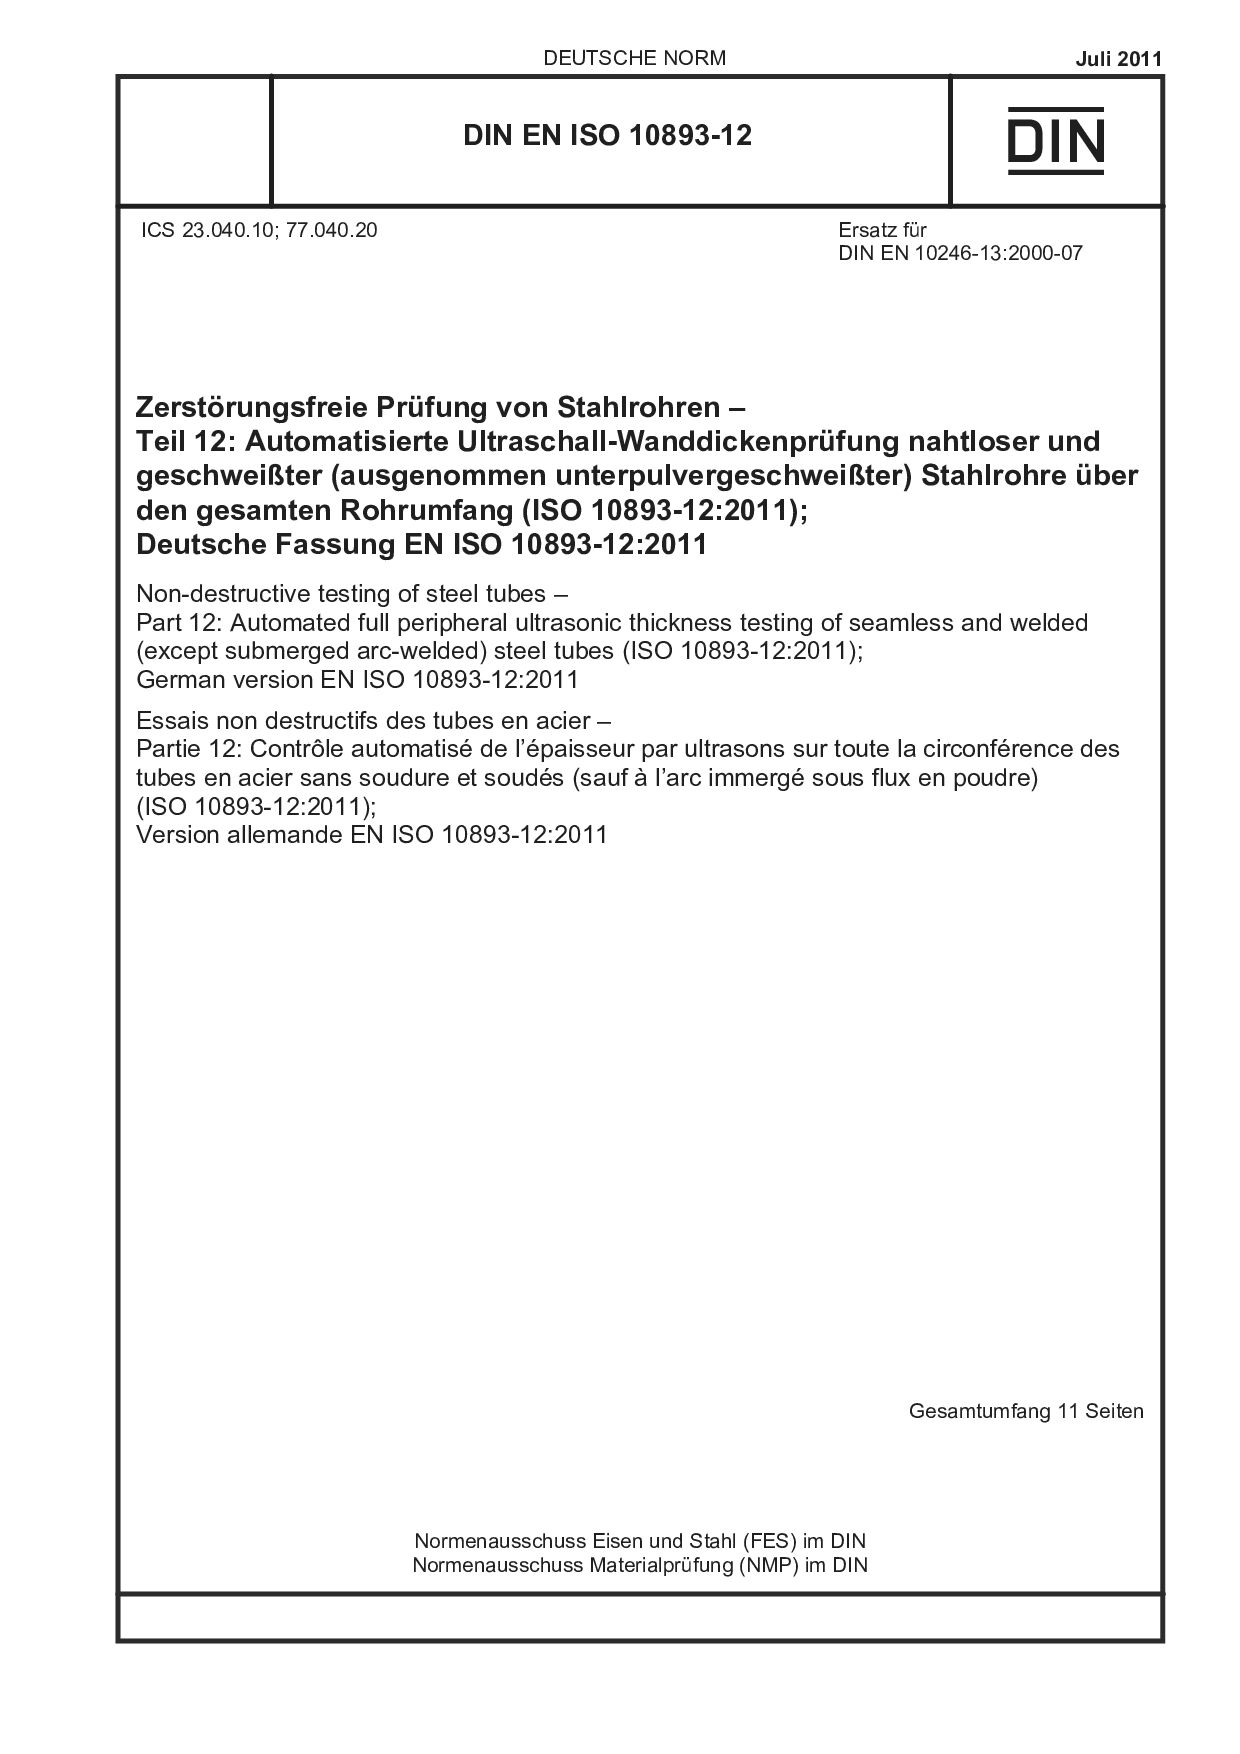 DIN EN ISO 10893-12:2011